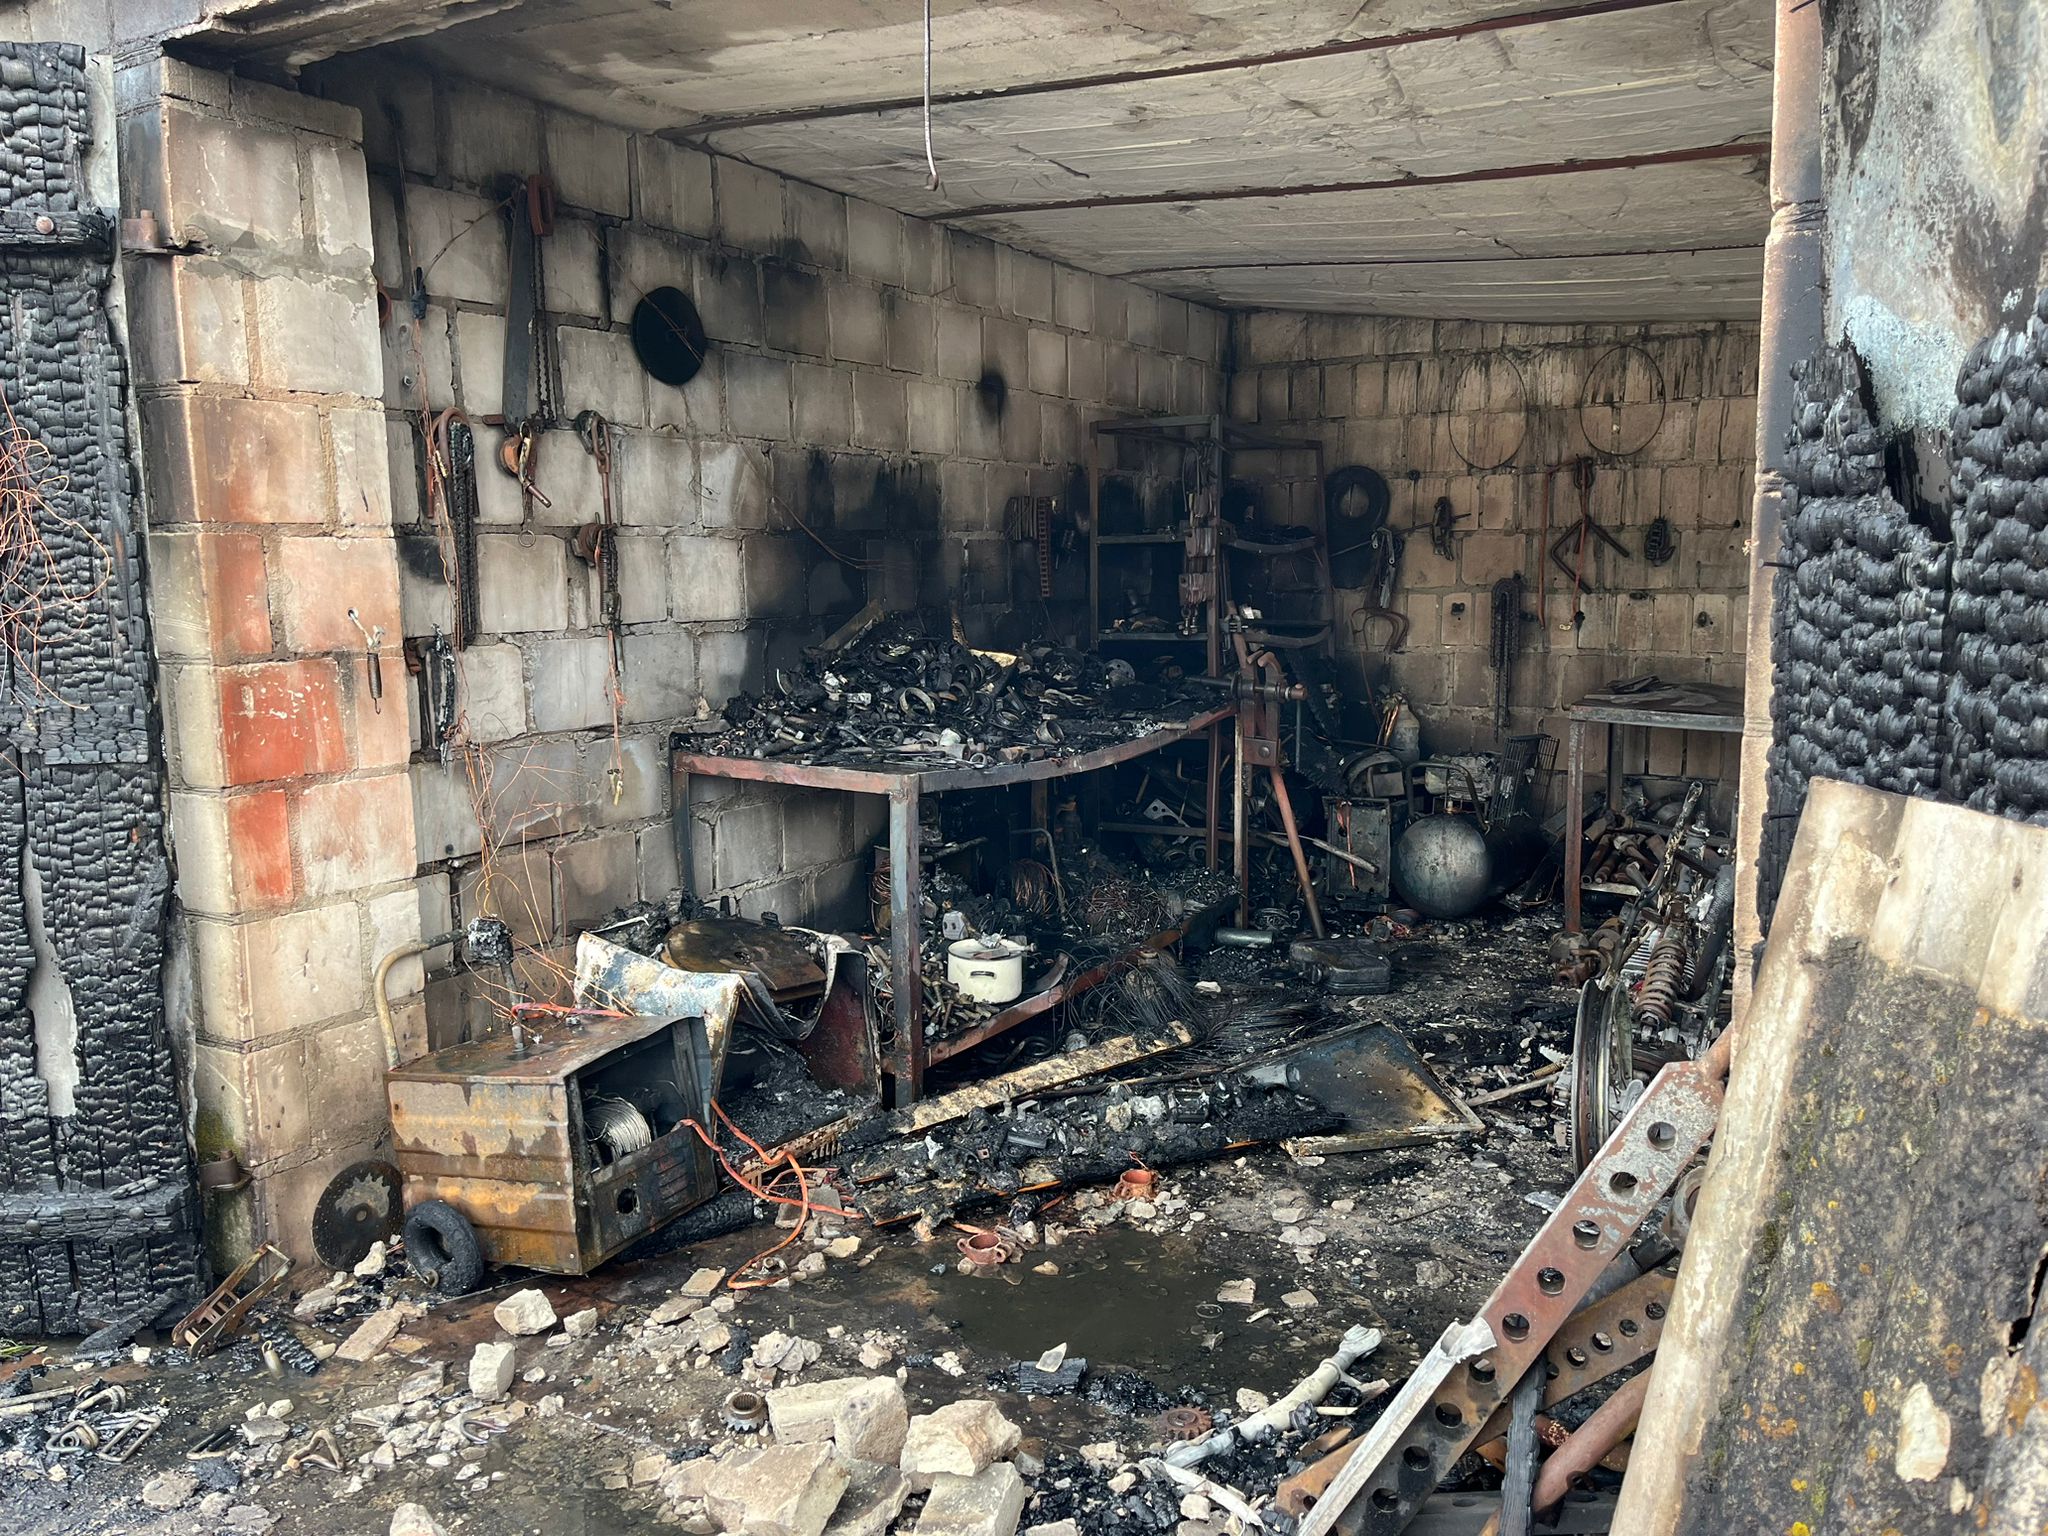 Zdjęcie przedstawia spaloną część garażową budynku, spalony sprzęt i wyposażenie garażu